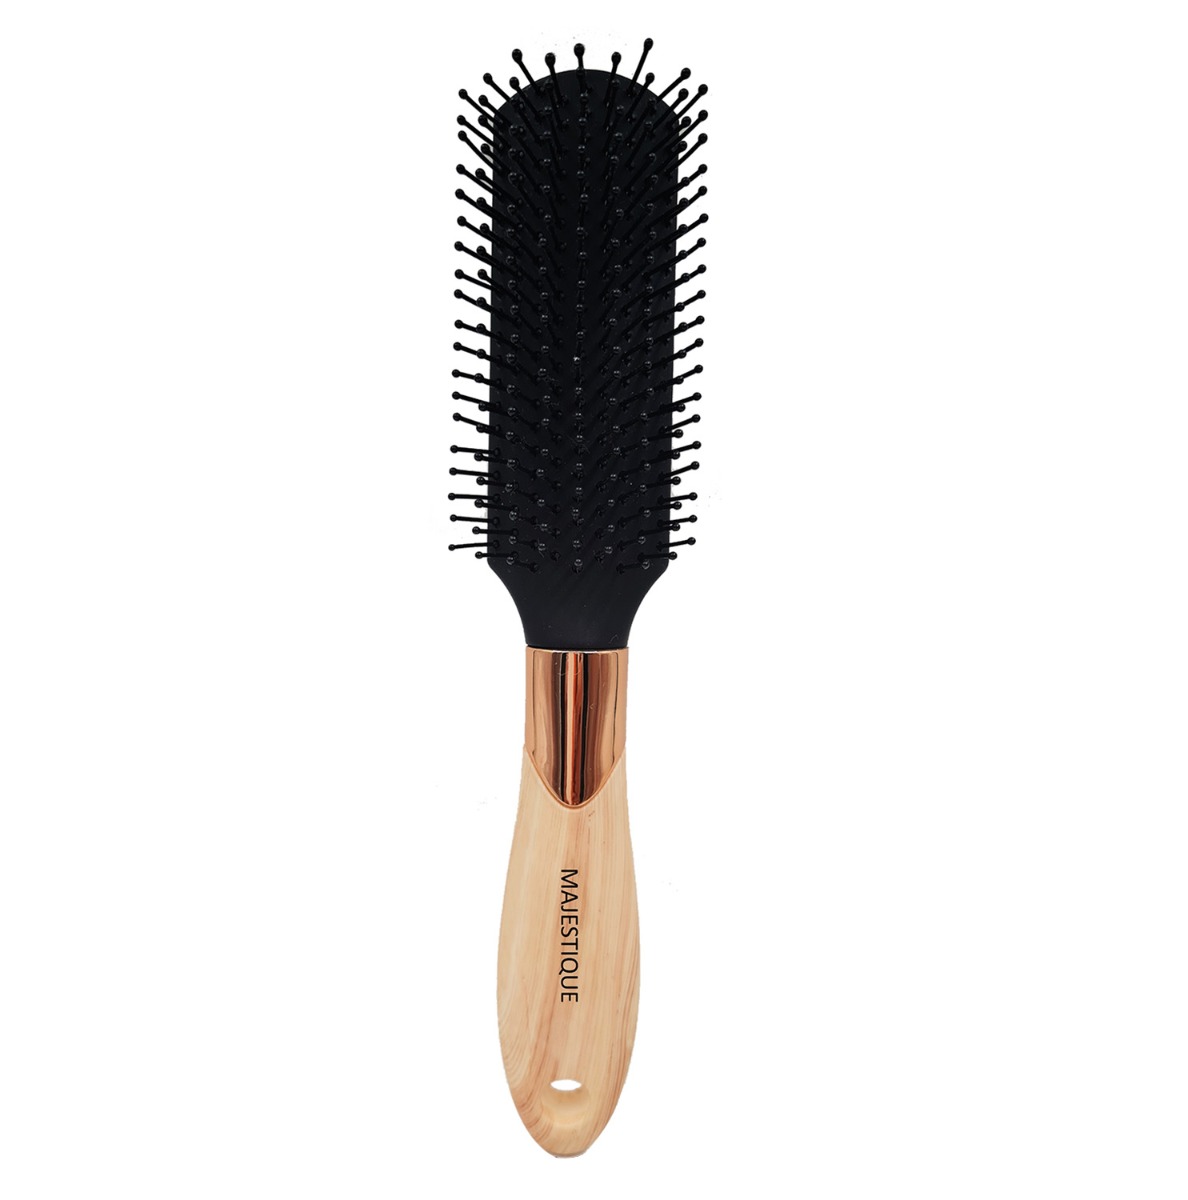 Majestique Hair Brush Premium 8 Row Flat Series, 1Pc